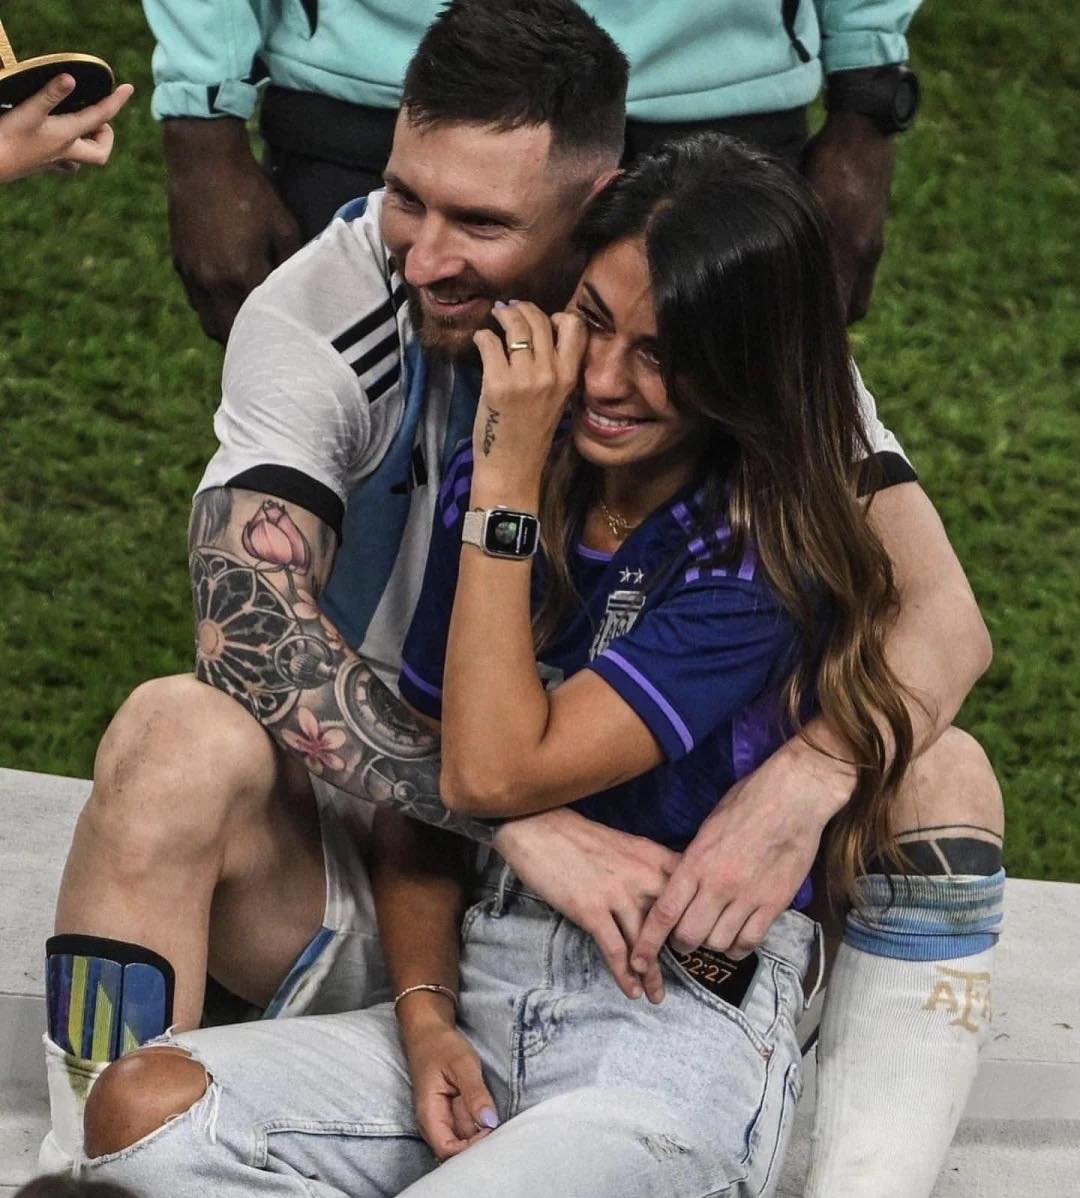 Hình ảnh về Messi và vợ sẽ khiến bạn cảm thấy ngọt ngào và ngưỡng mộ tình yêu đích thực của cặp đôi này.